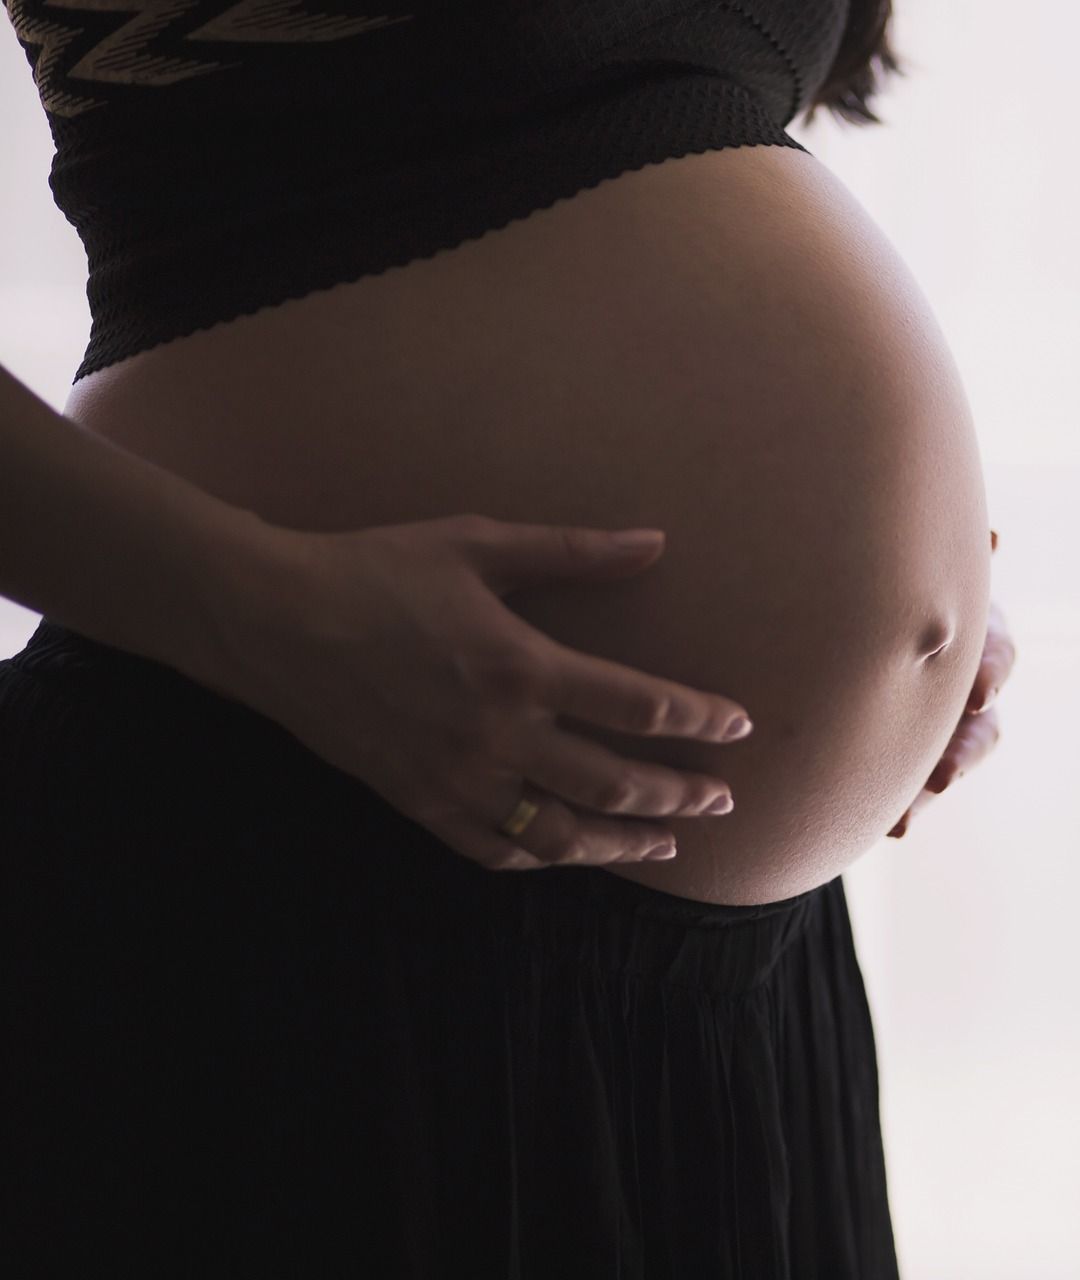 Hebammenbetreuung von Schwangeren